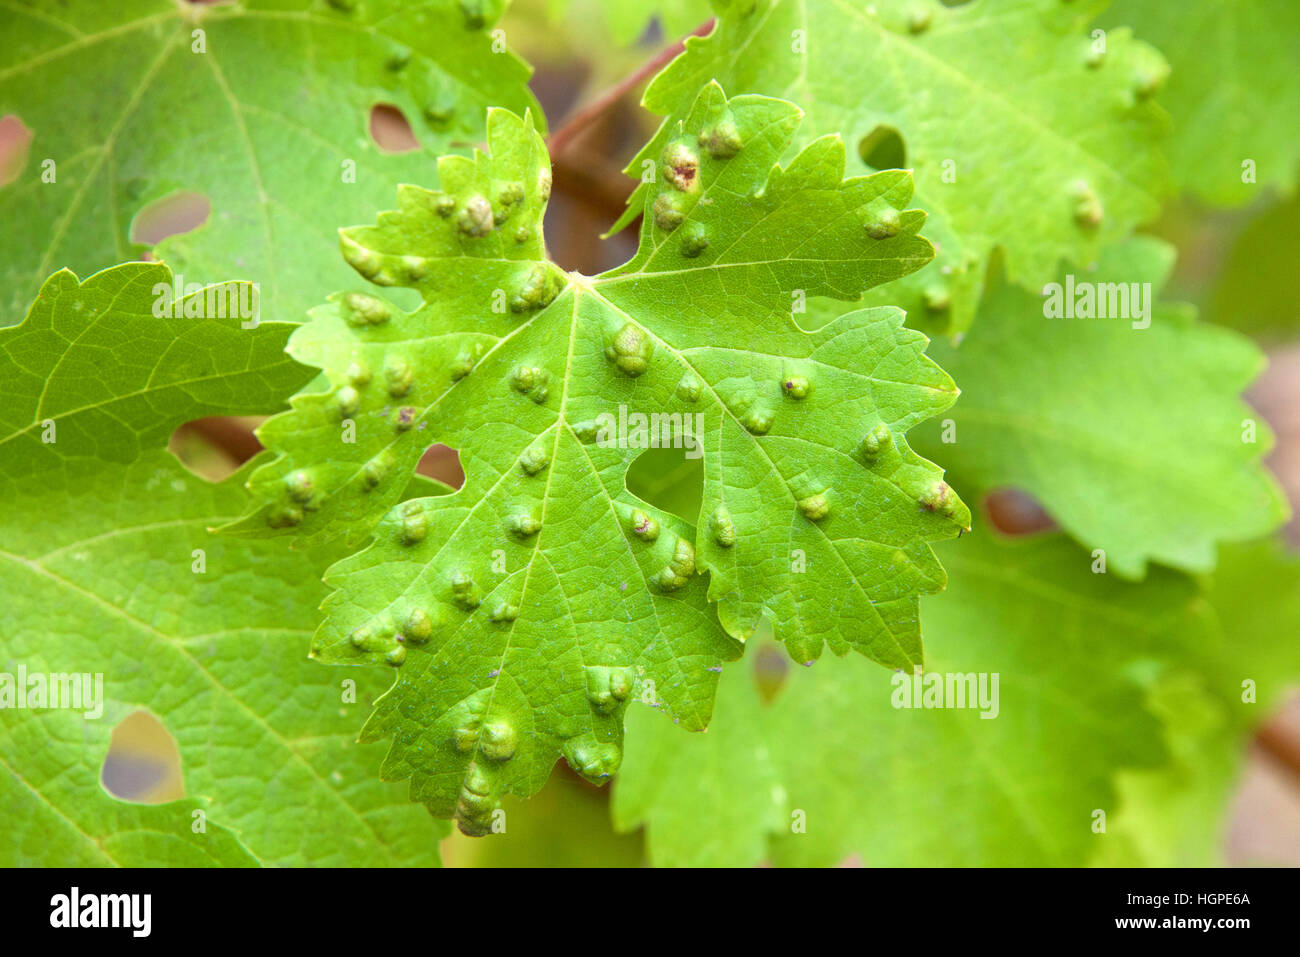 Leaf Gallapfel aussehen wie Warzen an Weinblätter, verursacht durch Parasiten oder Insekten, Milben, Leben in den Reben. Hat keinen Einfluss auf den Trauben. Stockfoto